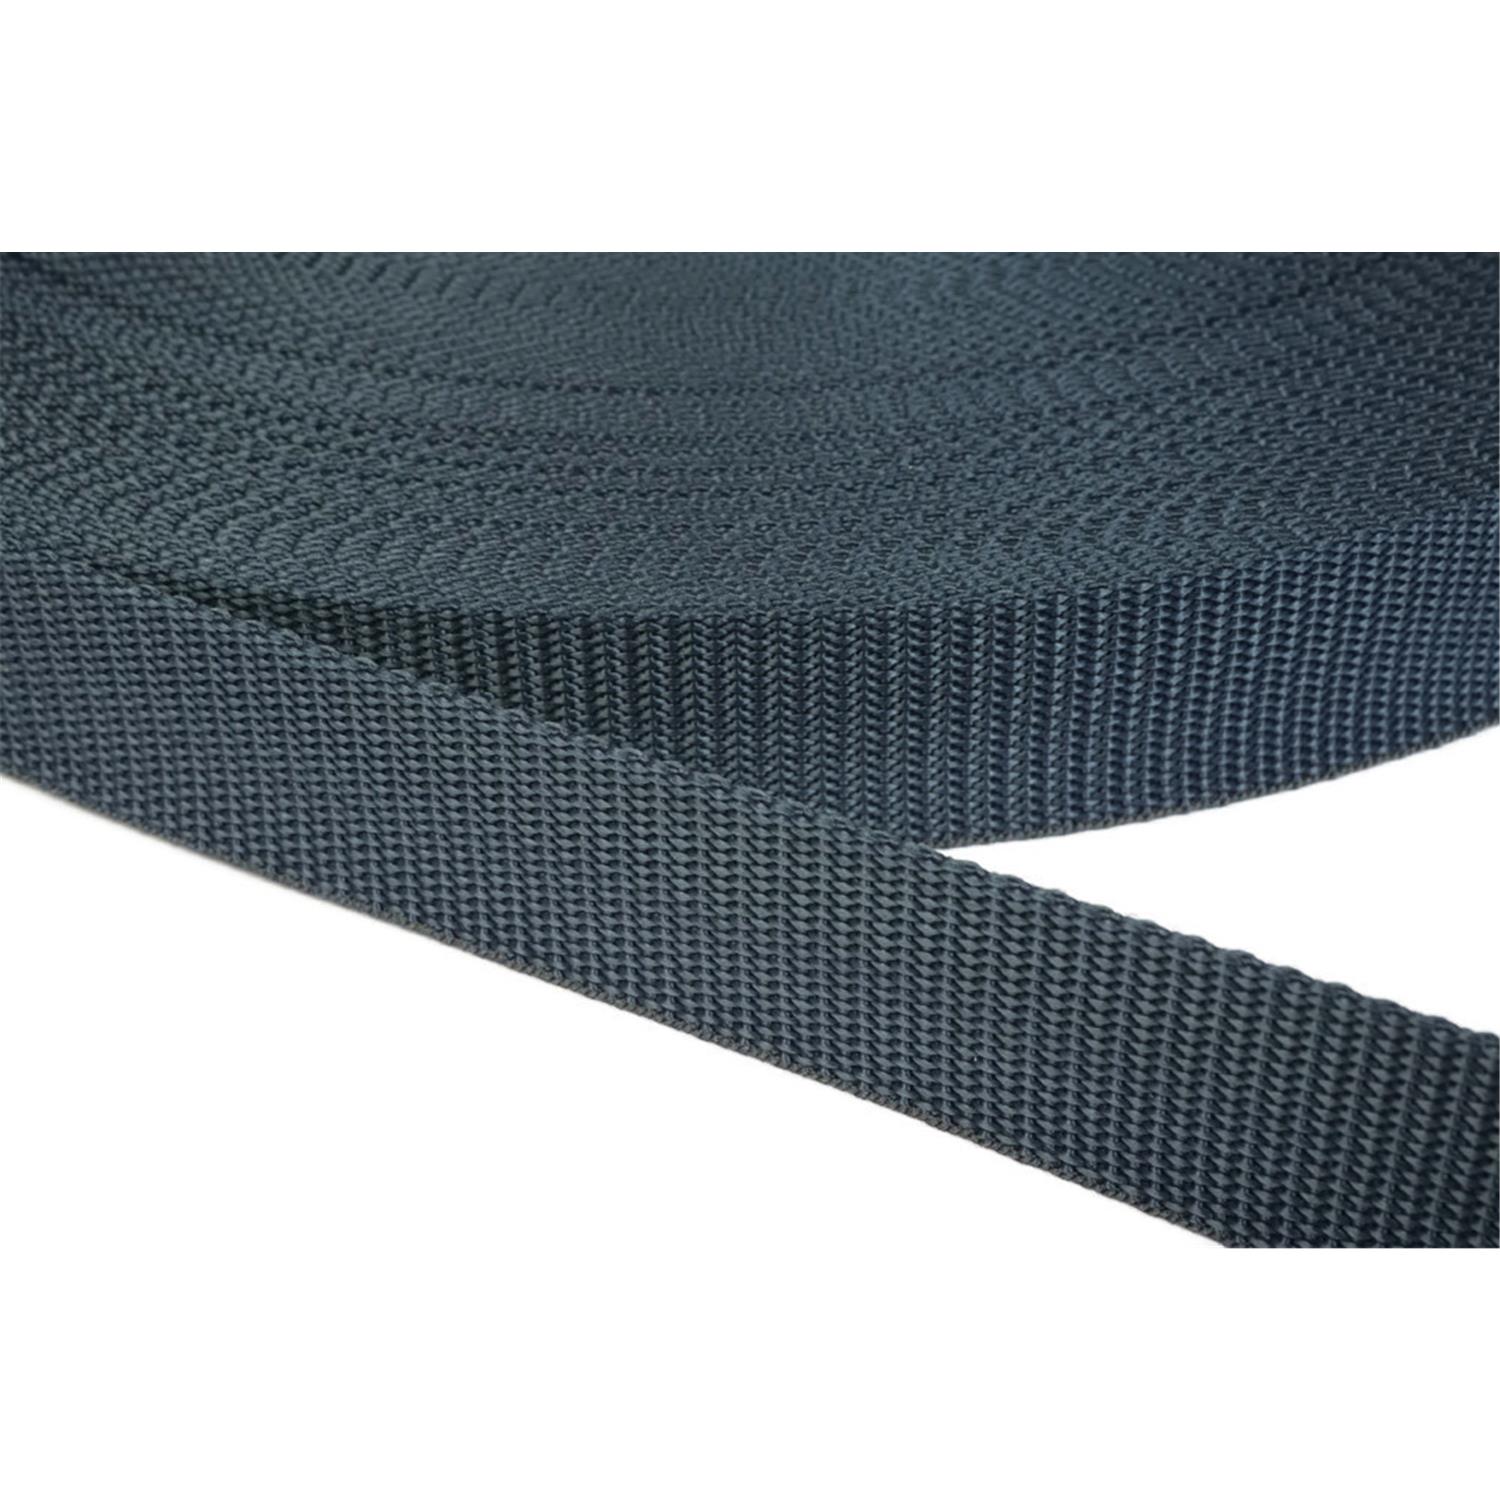 Gurtband 15mm breit aus Polypropylen in 41 Farben 40 - dunkelgrau/blau 50 Meter